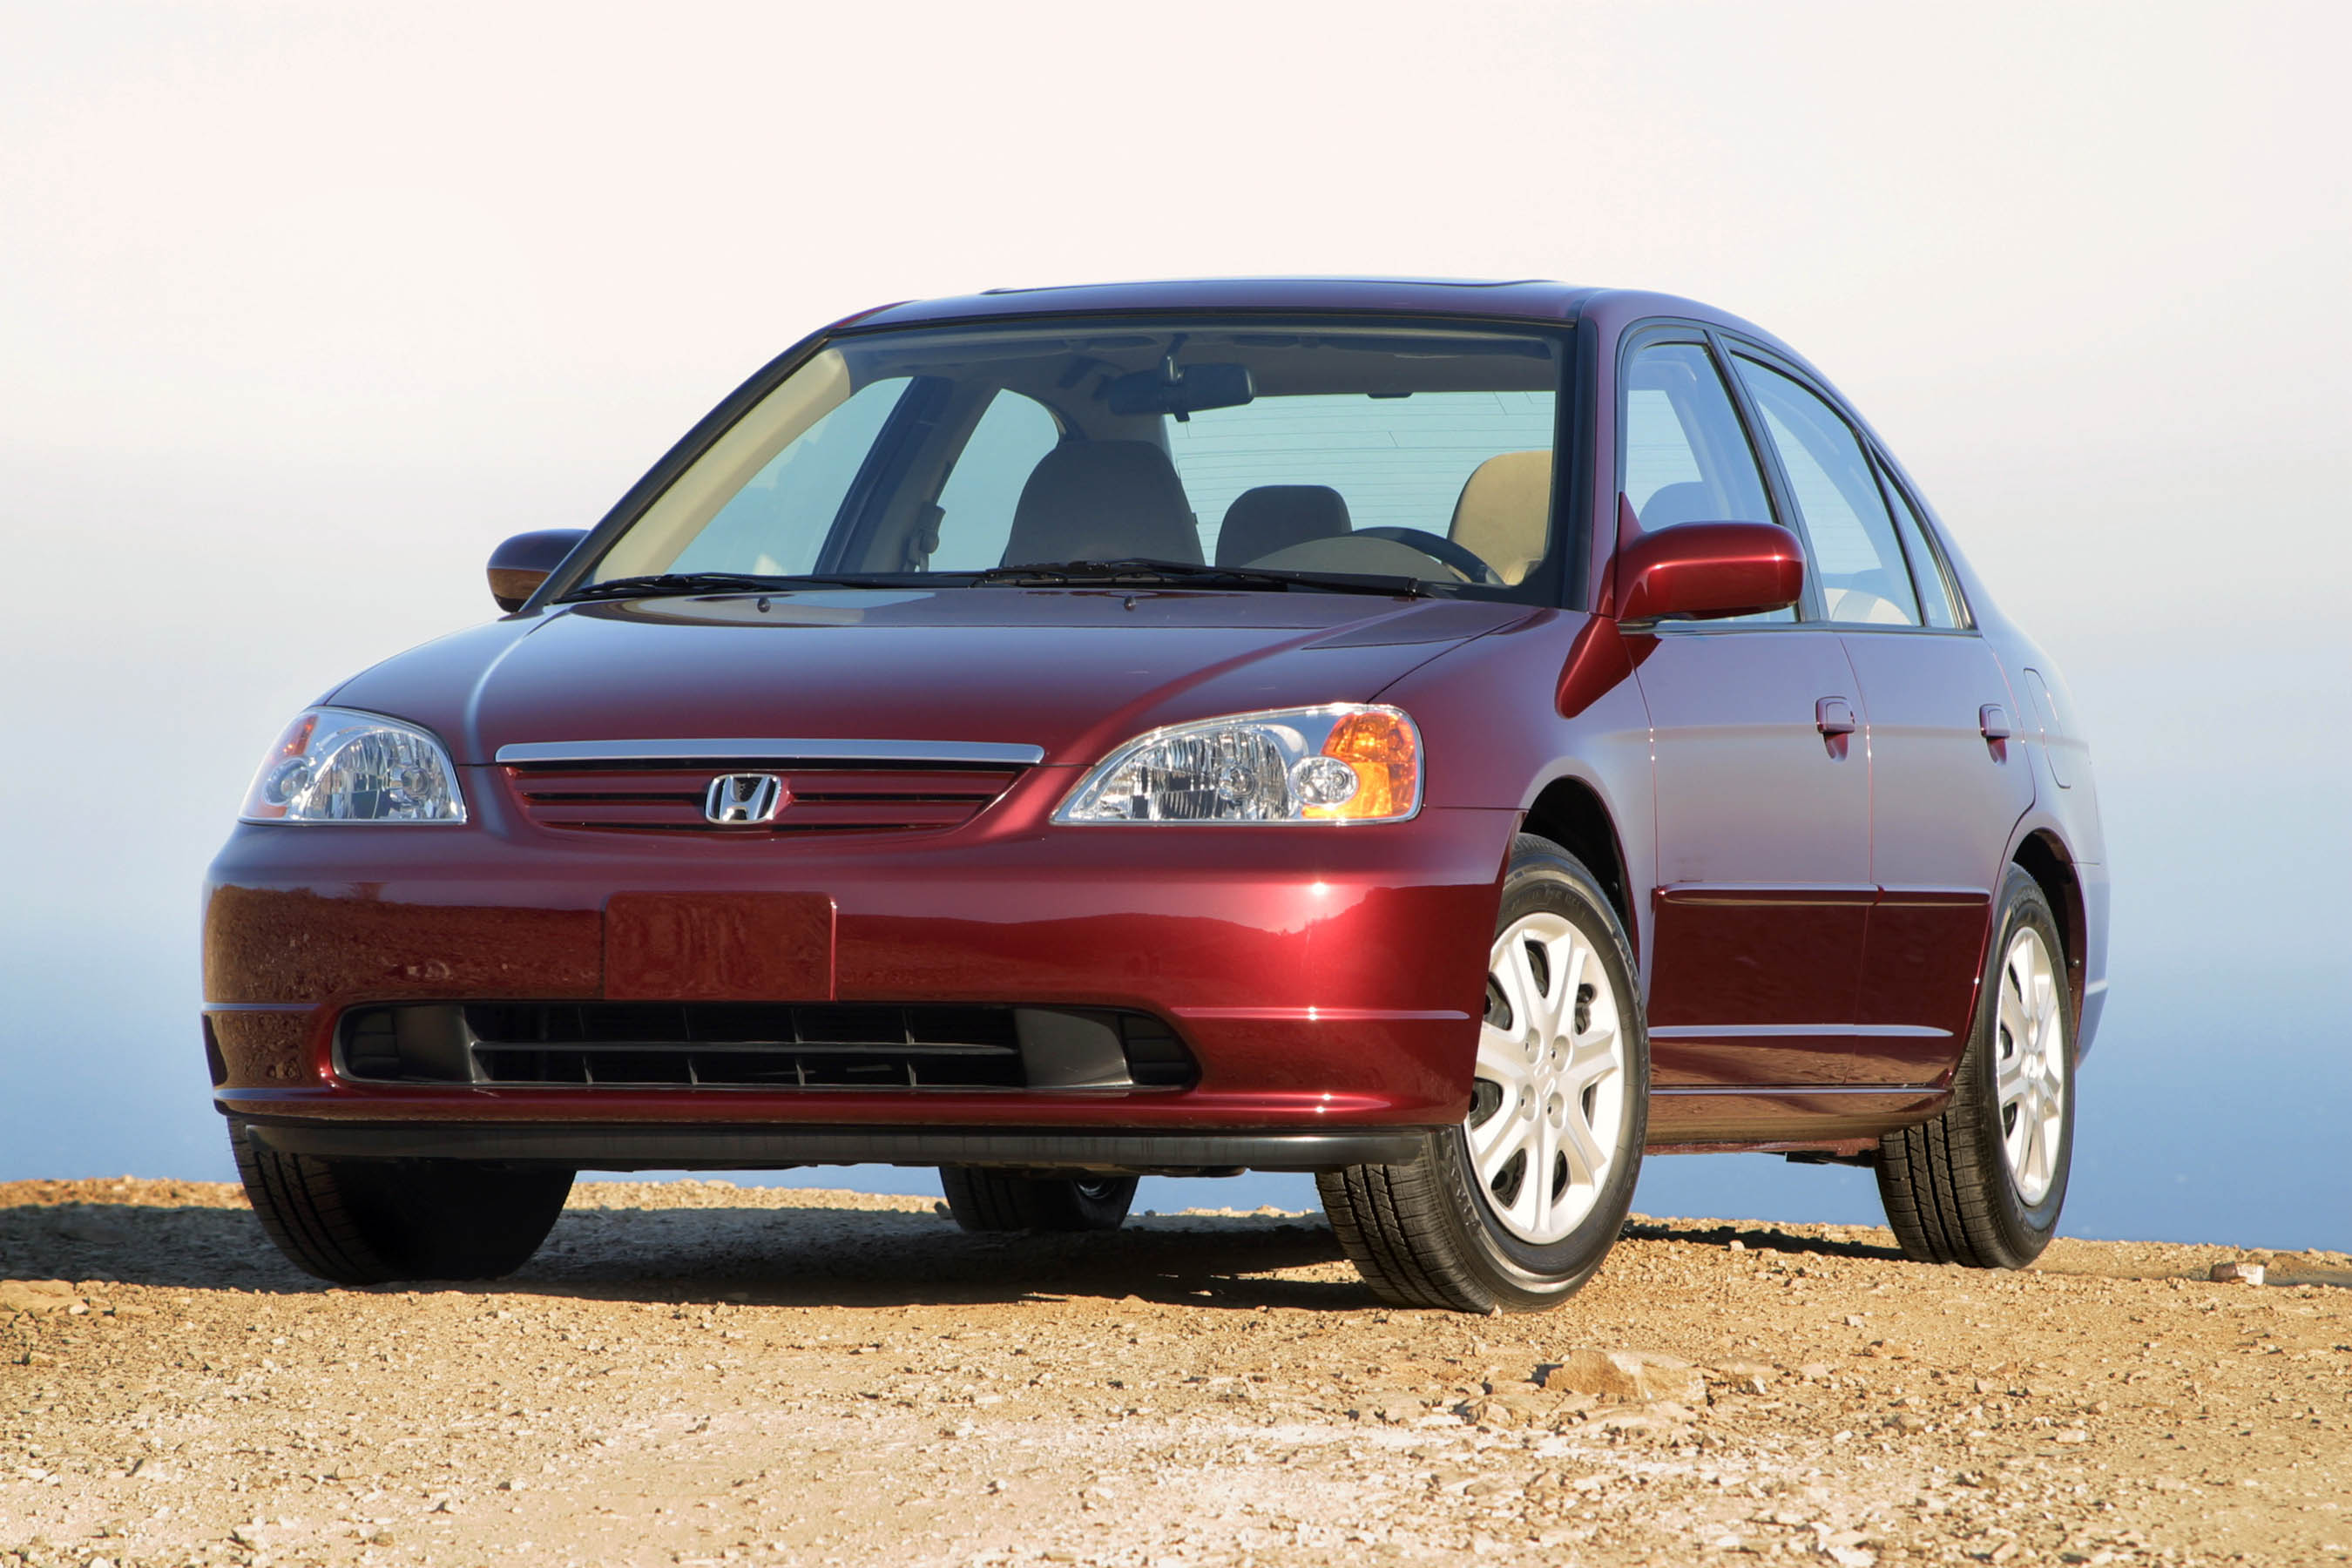 Цивик 7 купить. Honda Civic 7 2001. Honda Civic 7 поколение. Honda Civic 2003 седан. Honda Civic 2001 седан.